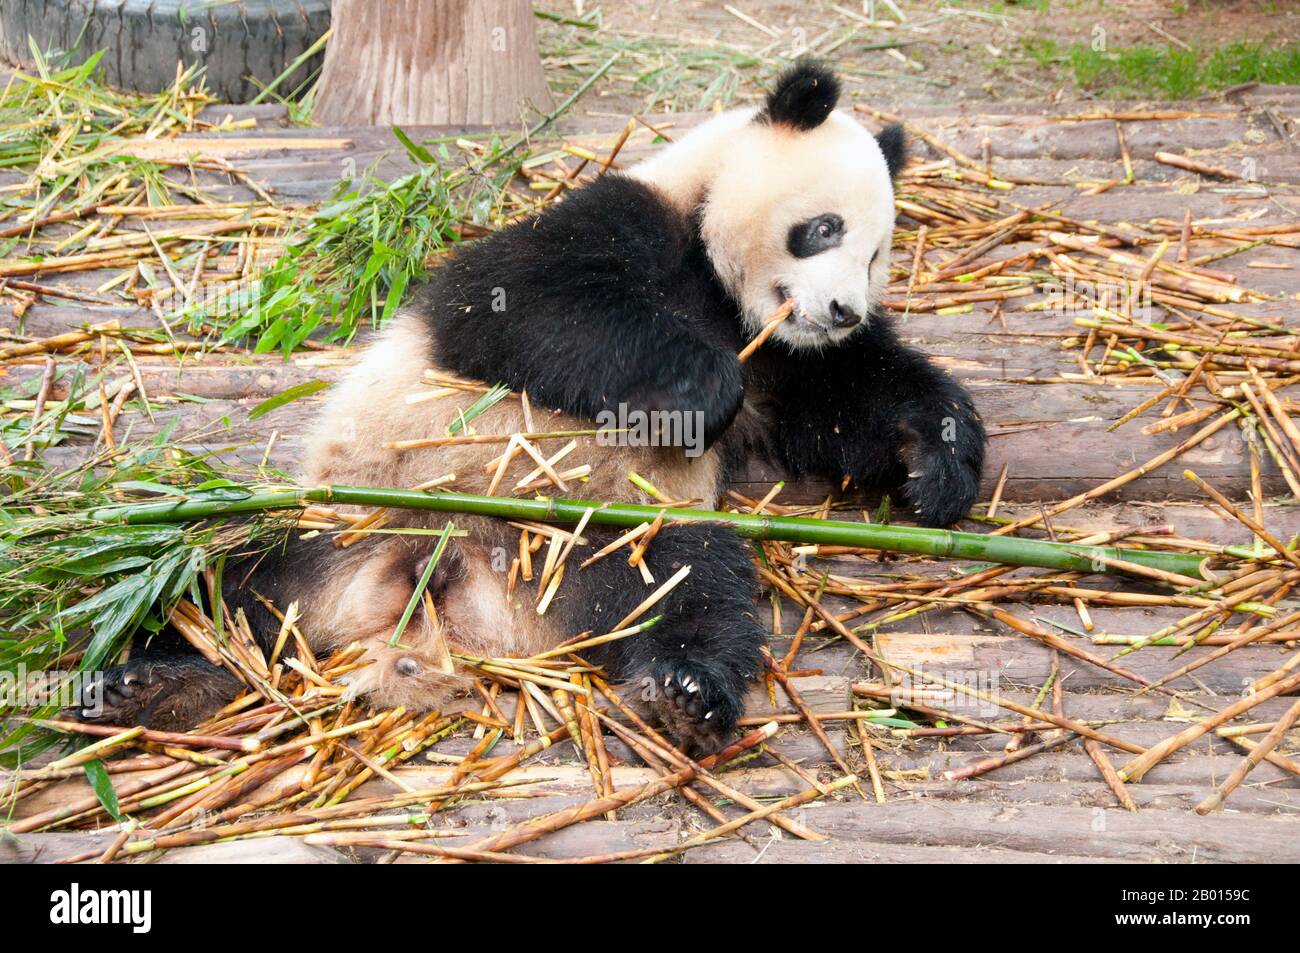 China: Riesige Pandas, Forschungsbasis Für Die Züchtung Des Großen Pandas, Chengdu, Provinz Sichuan. Der riesige Panda, oder Panda (Ailuropoda melanoleuca, wörtlich übersetzt „schwarzer und weißer Katzenfuß“), ist ein Bär, der im zentralen Westen und Südwesten Chinas beheimatet ist. Sie ist leicht an ihren großen, markanten schwarzen Flecken rund um die Augen, über den Ohren und über ihrem runden Körper zu erkennen. Obwohl es zur Ordnung Carnivora gehört, besteht die Panda-Diät zu 99 % aus Bambus. Stockfoto